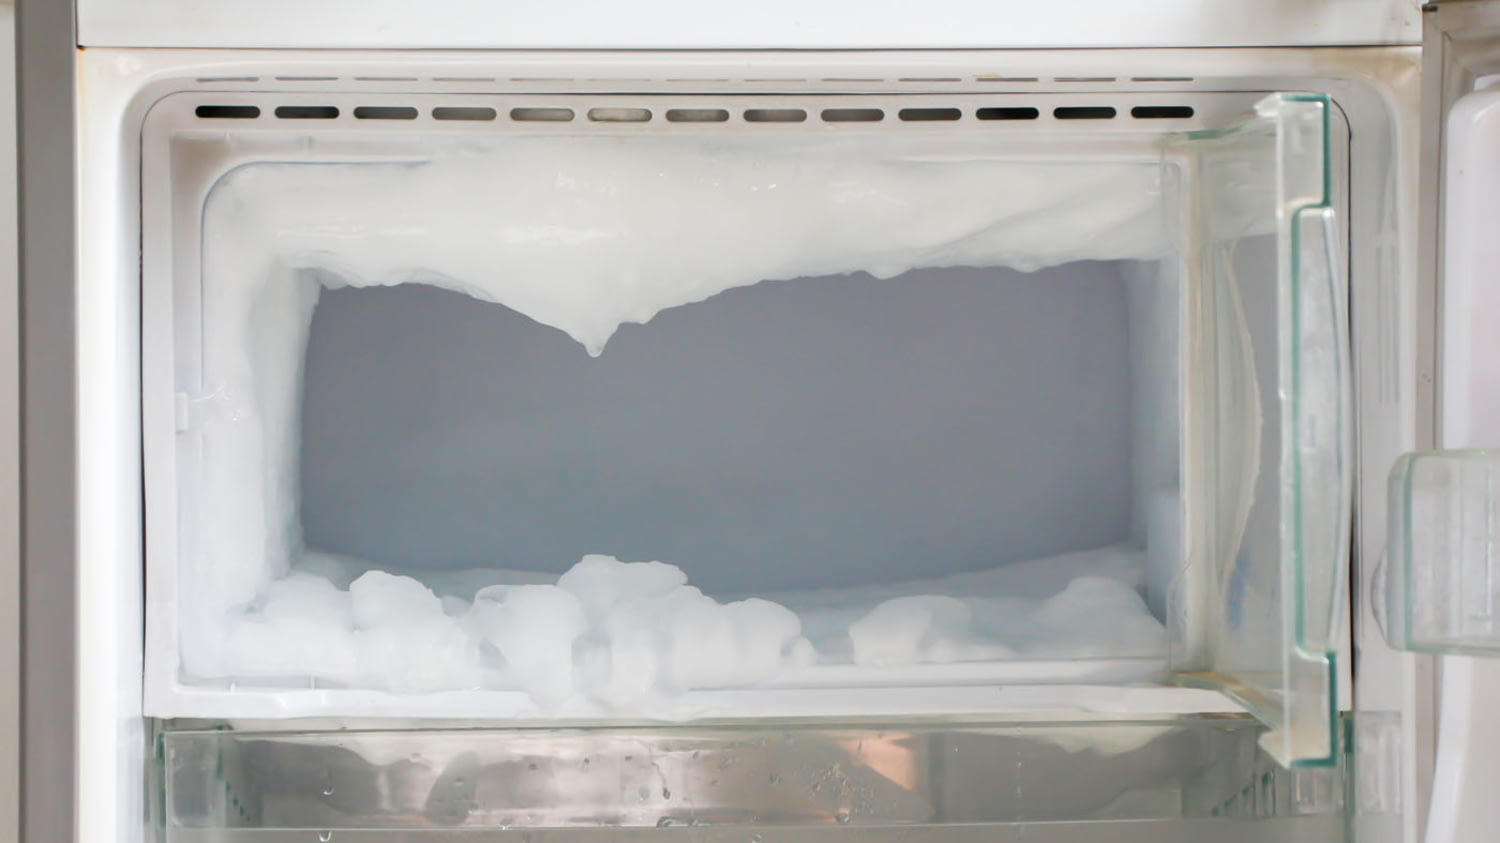 Geöffnetes Fach eines Tiefkühlgeräts mit zentimeterdicker Eisschicht